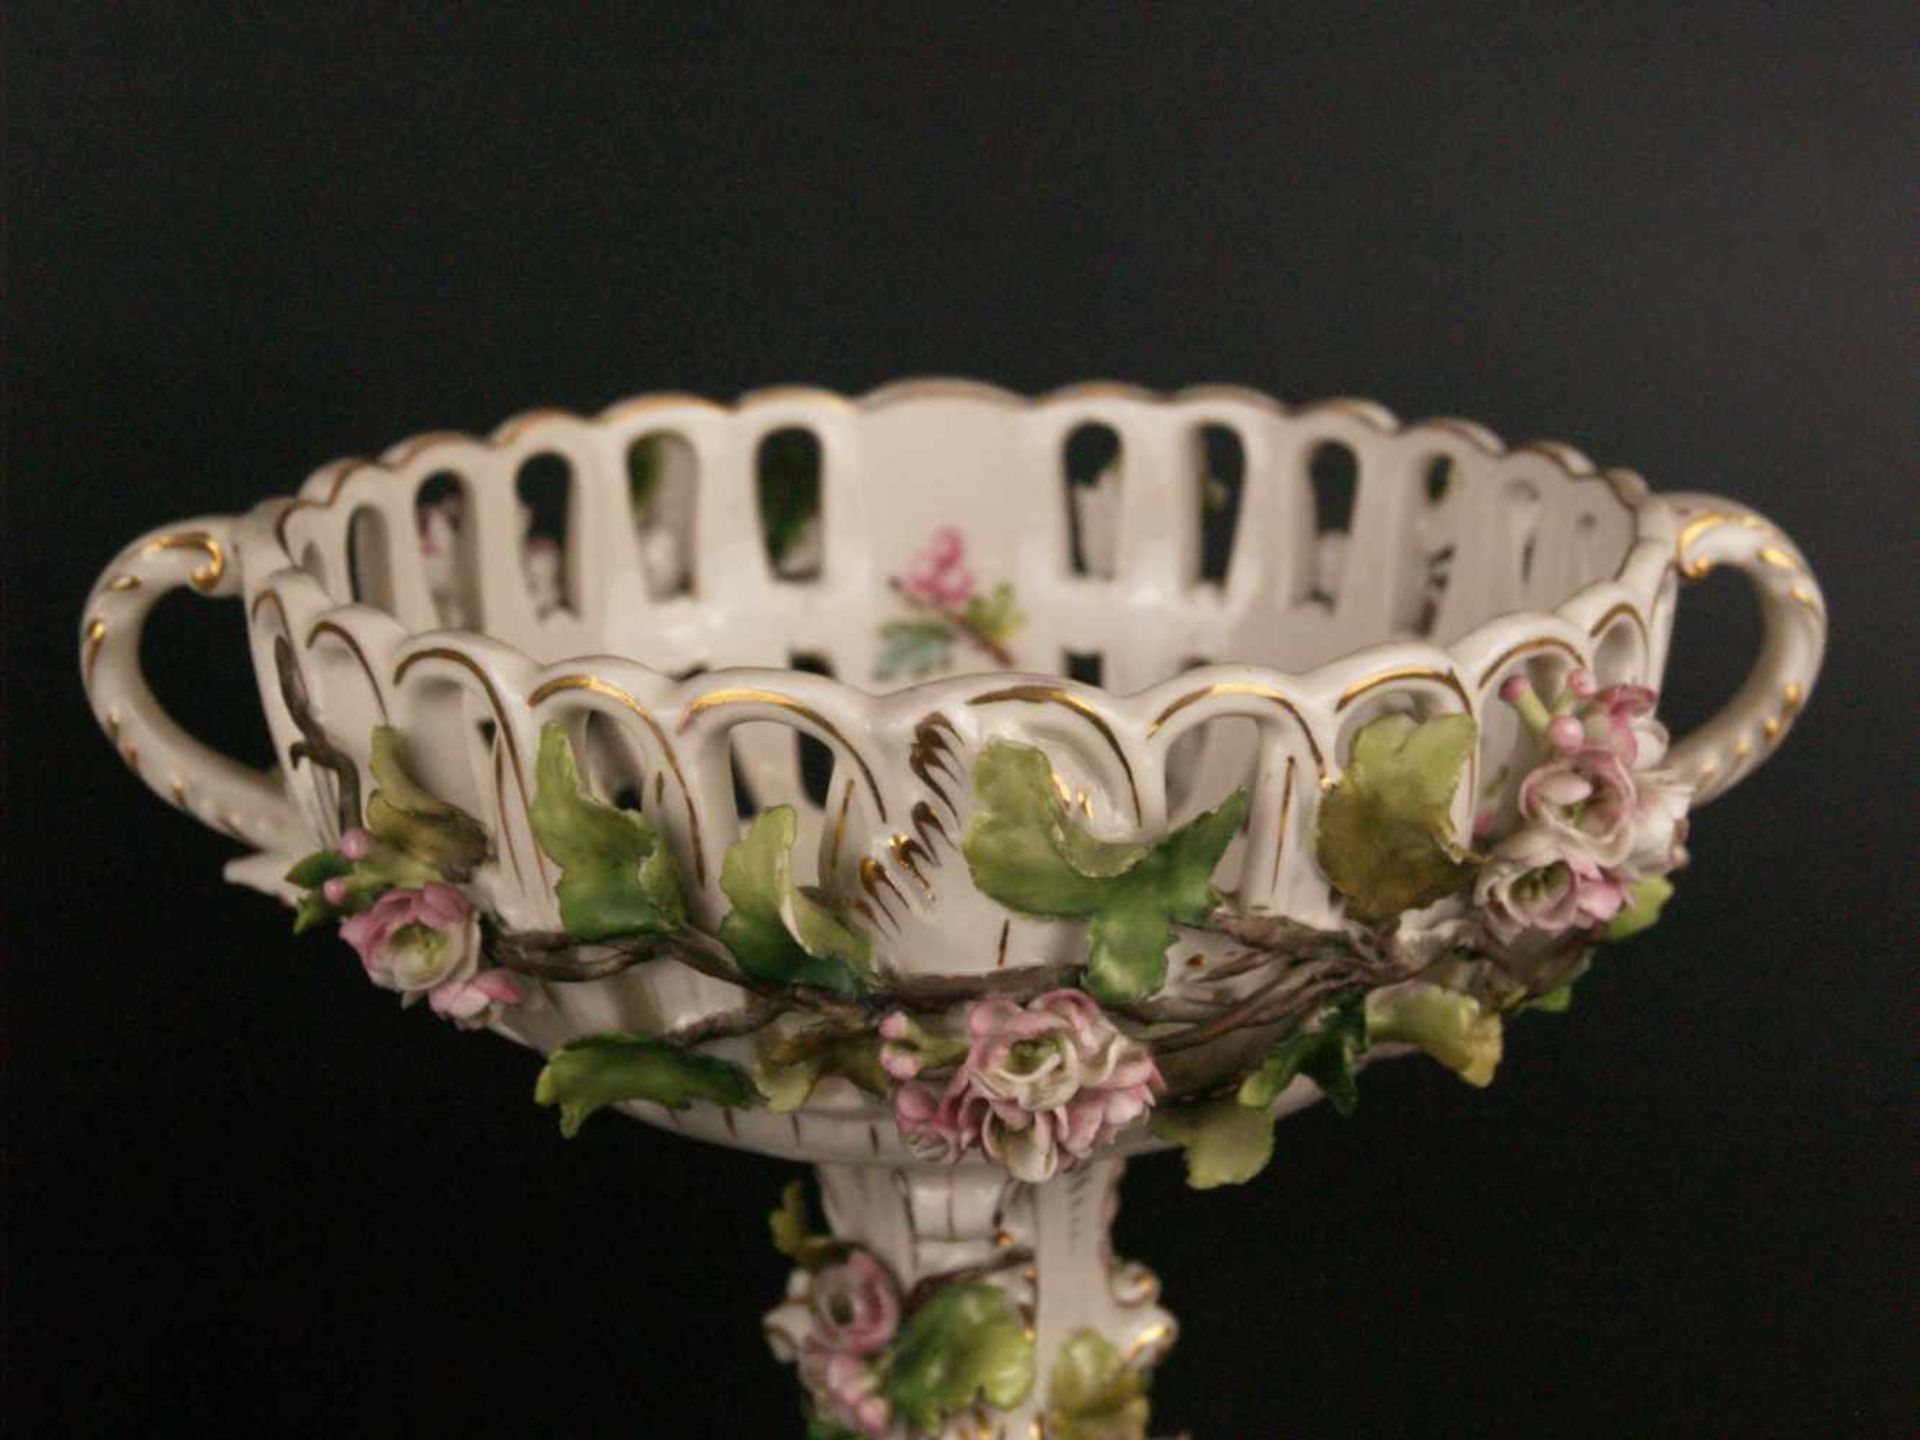 Fußschale - weißes Porzellan glasiert, mit üppigem plastischem Floral- und Rocaille-Dekor, - Bild 3 aus 5